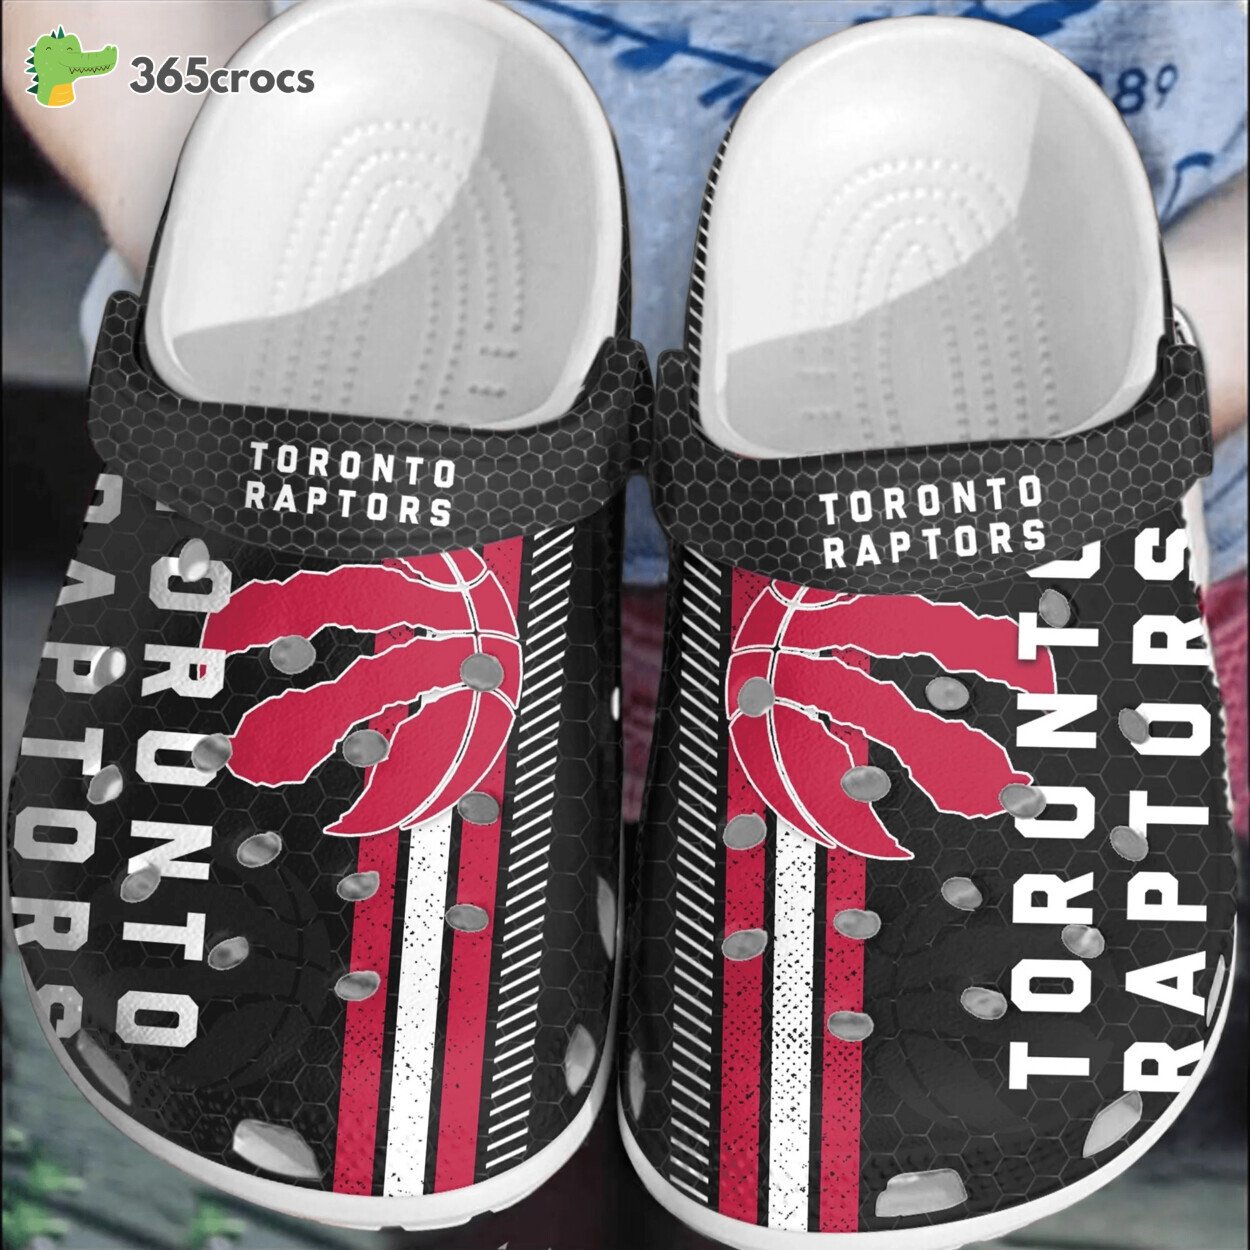 Toronto Raptors Basketball Collection Comfortable Crocss Clog Shoe